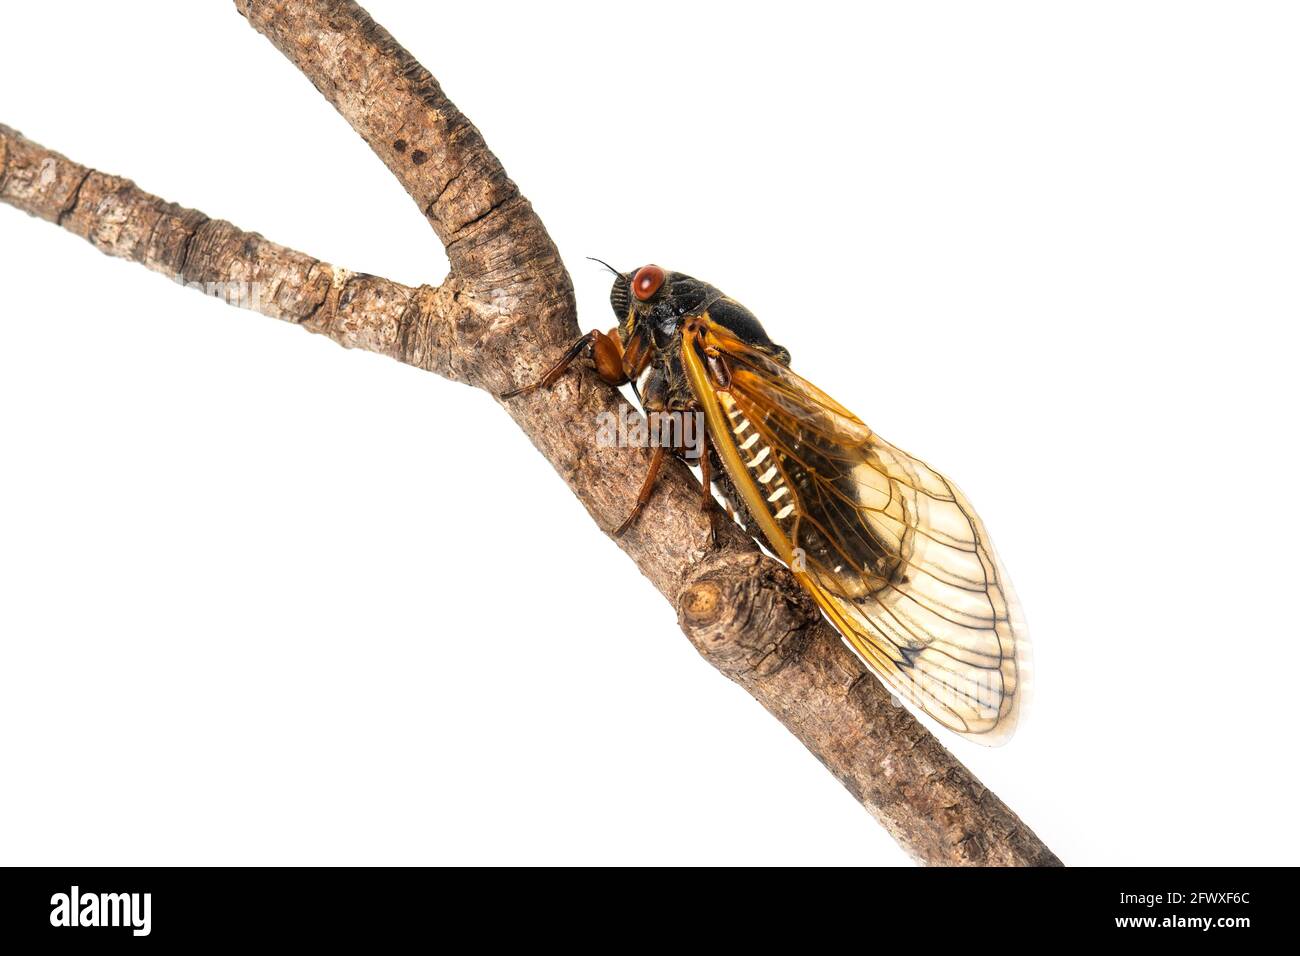 Brood X 17 ans adulte périodique cicada sur une branche isolée sur fond blanc Banque D'Images